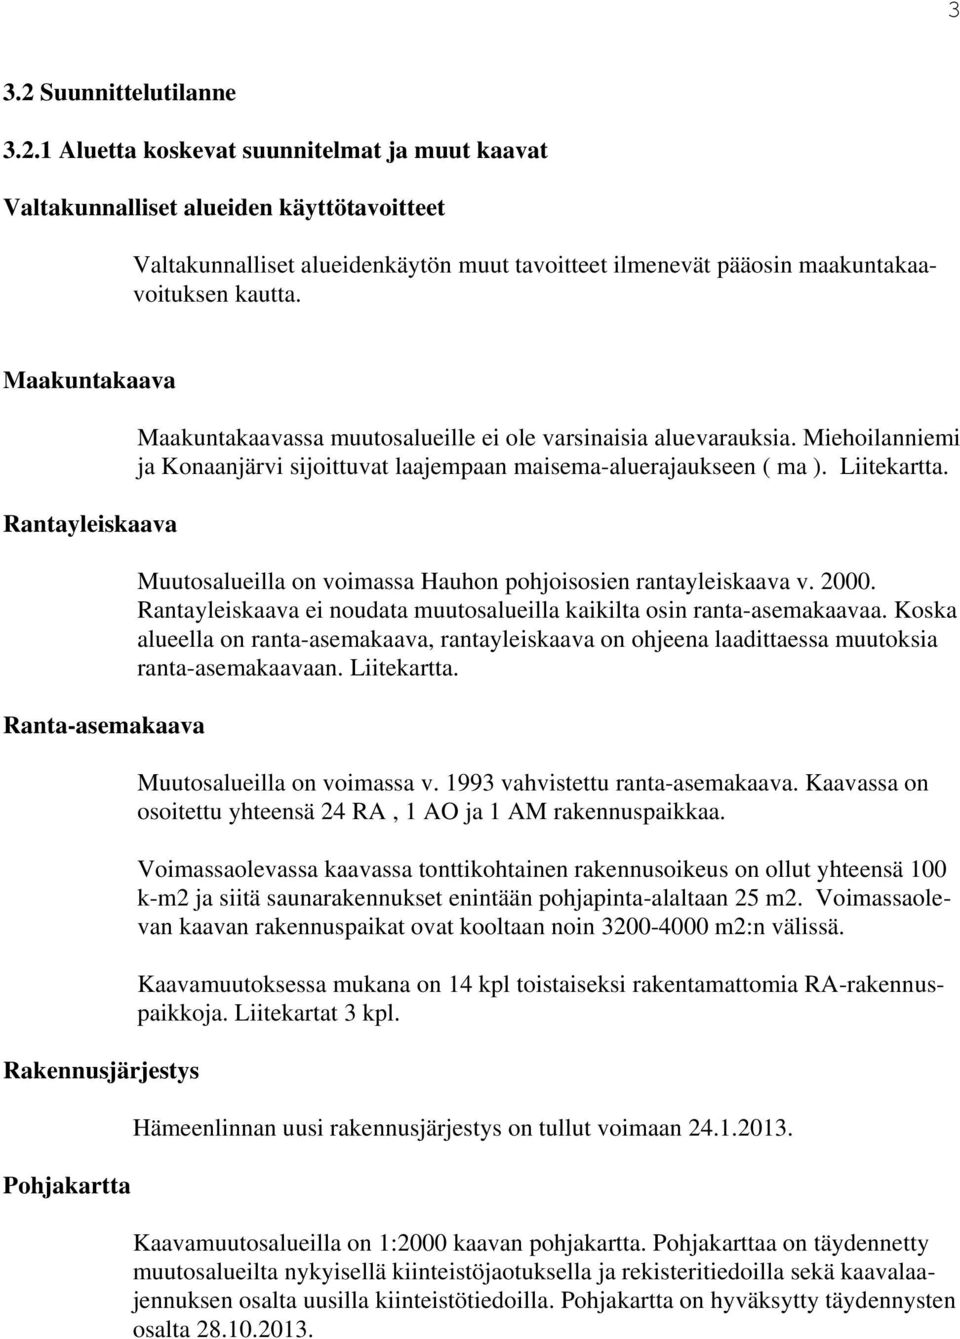 Miehoilanniemi ja Konaanjärvi sijoittuvat laajempaan maisema-aluerajaukseen ( ma ). Liitekartta. Muutosalueilla on voimassa Hauhon pohjoisosien rantayleiskaava v. 2000.